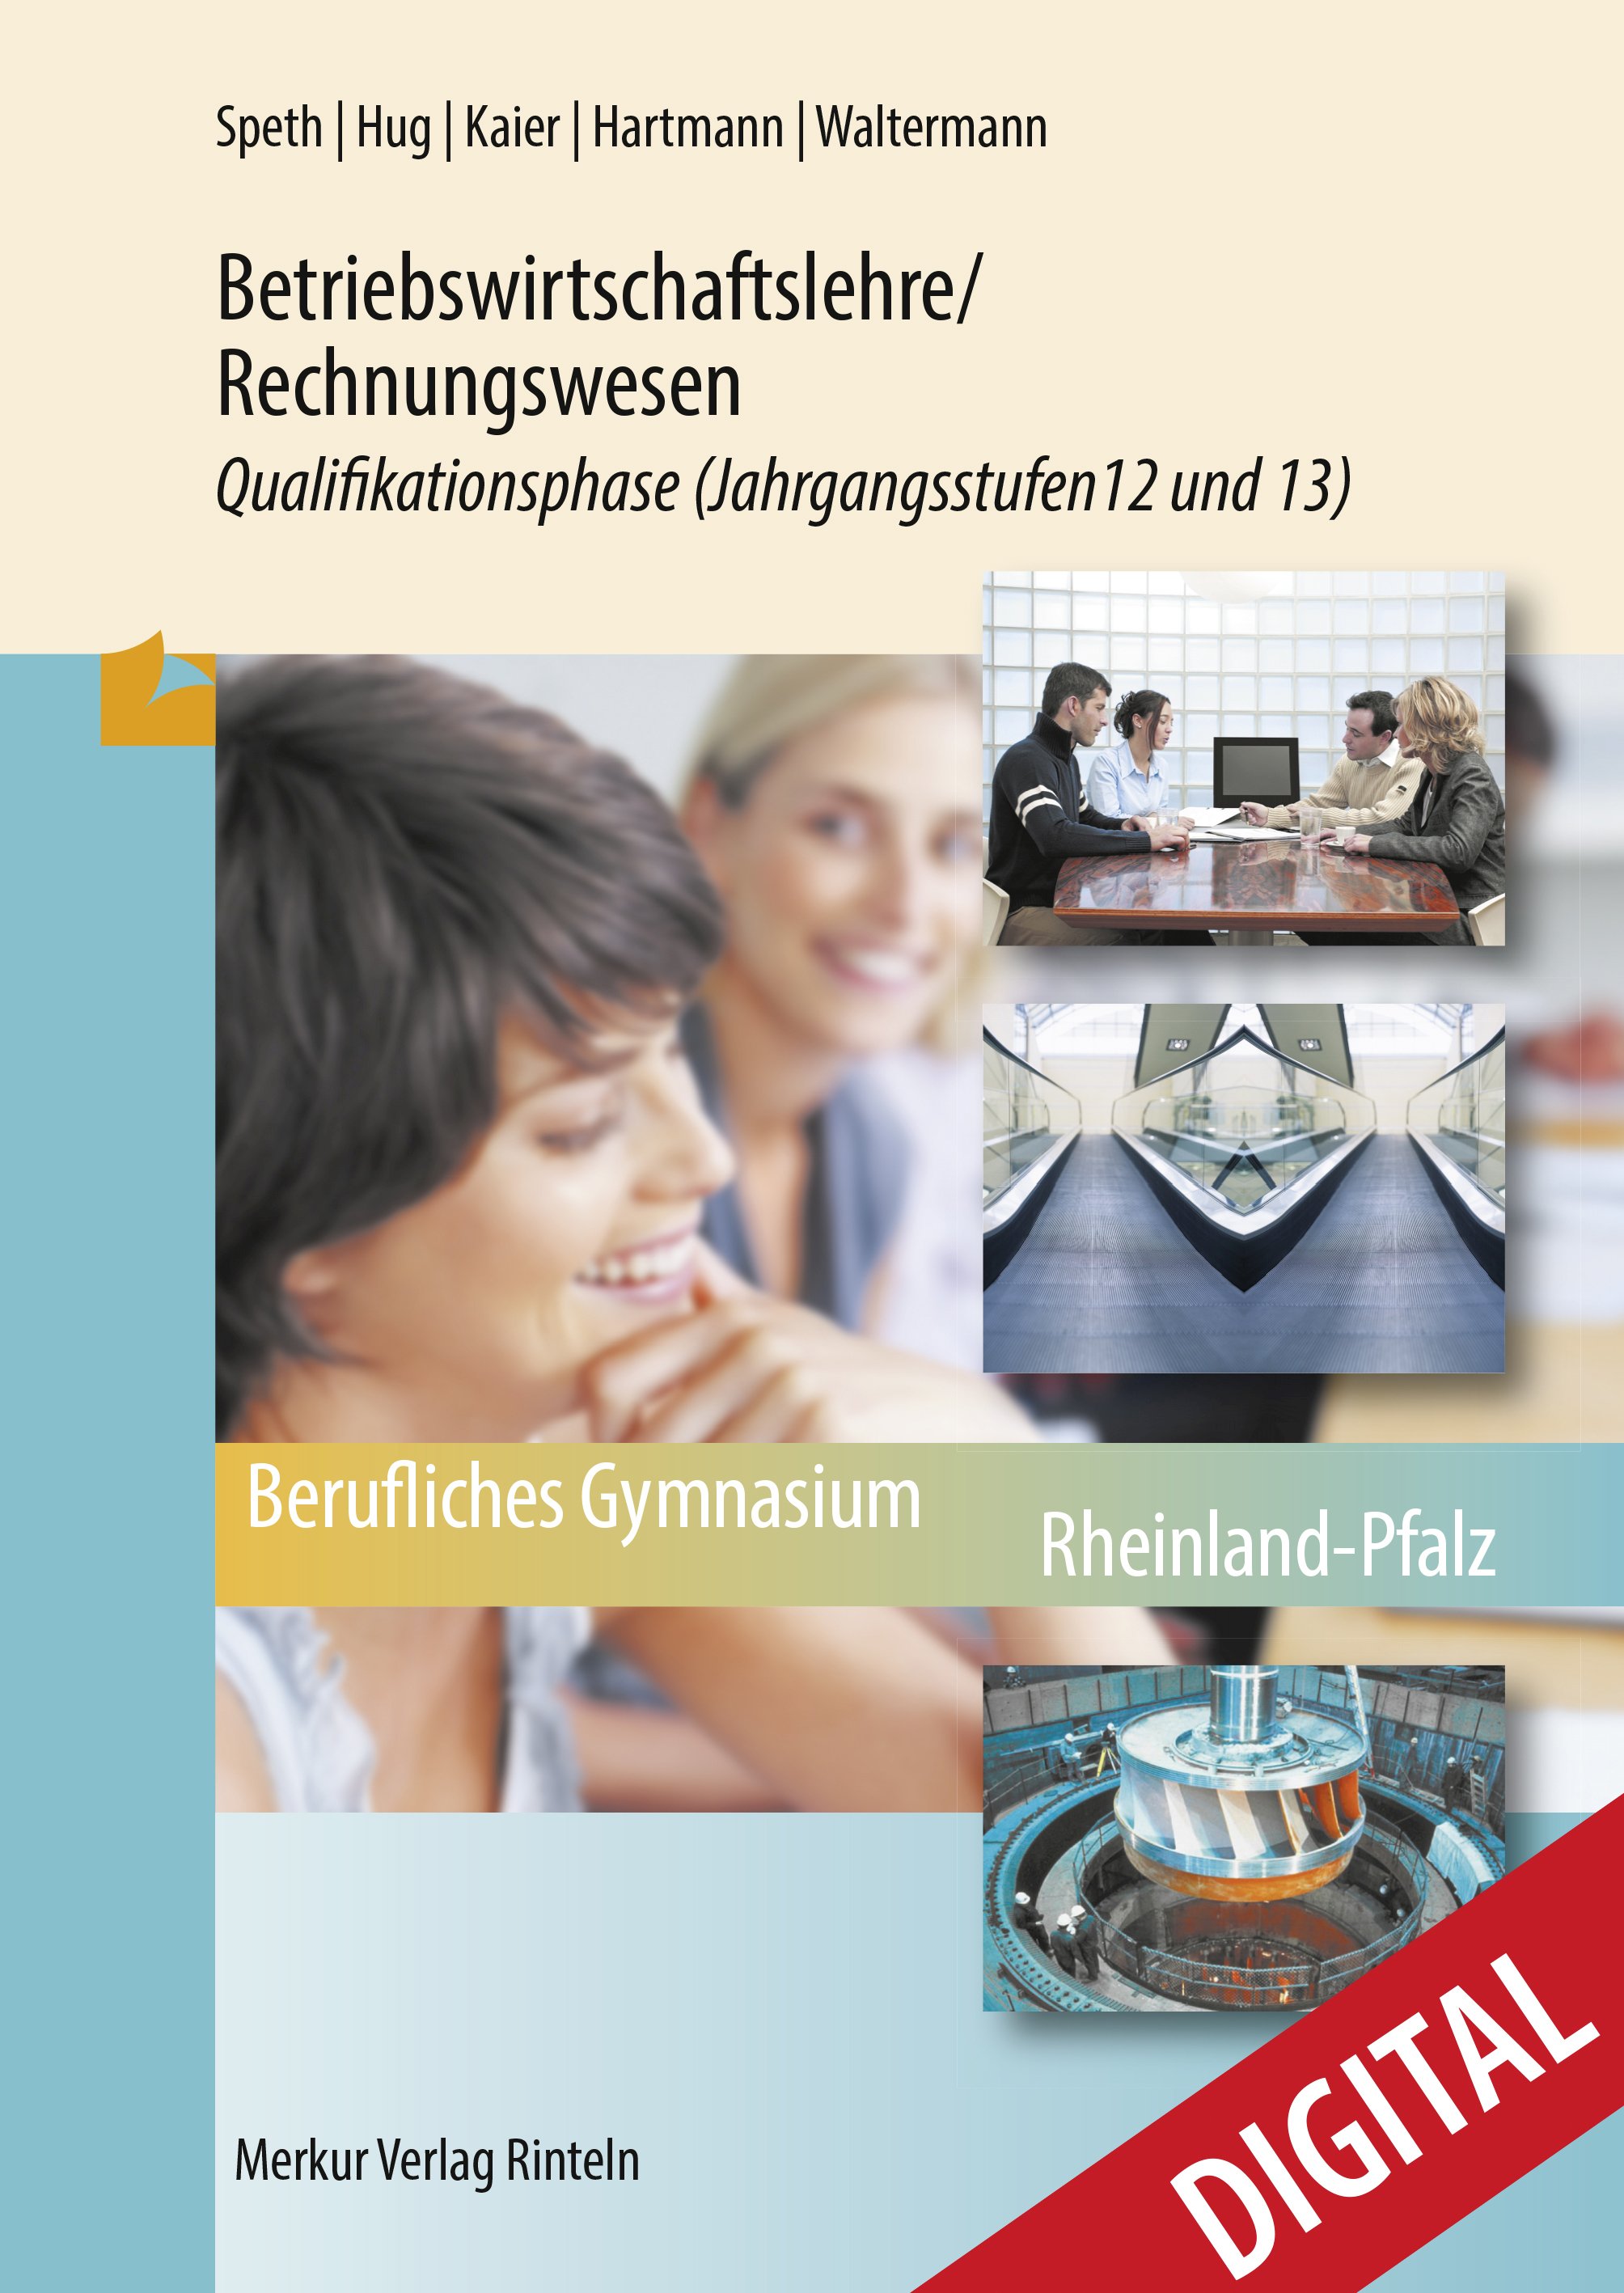 Betriebswirtschaftslehre / Rechnungswesen - Qualifikationsphase Jahrgangsstufen 12 und 13 (Rheinland-Pfalz)